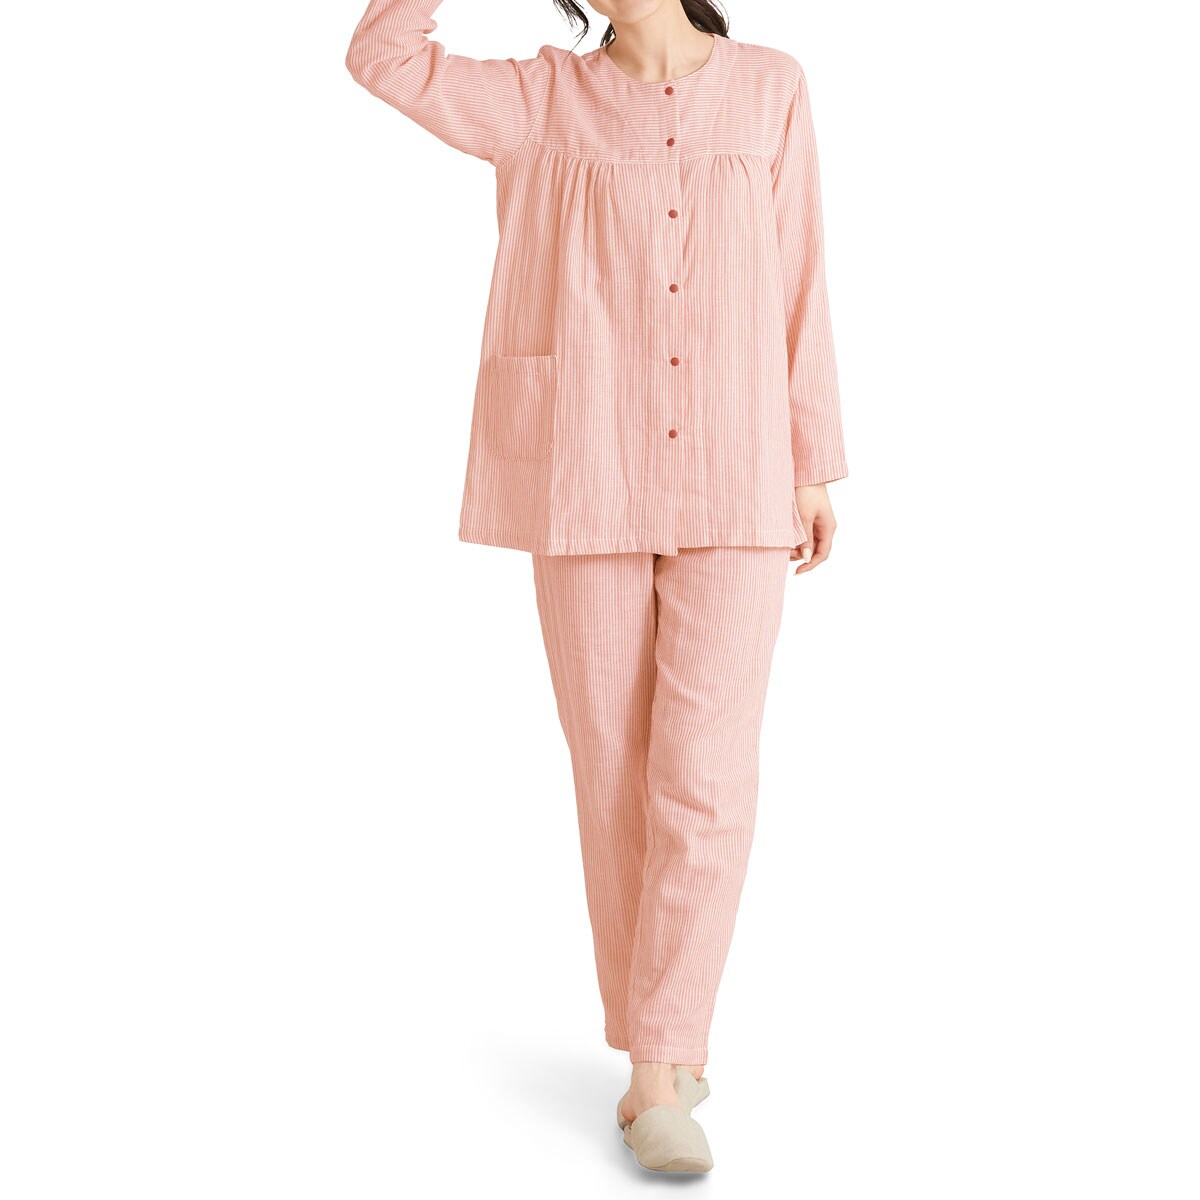 ダブルガーゼのスナップ釦パジャマ(綿100%) ファッション通販ならセシール(cecile)